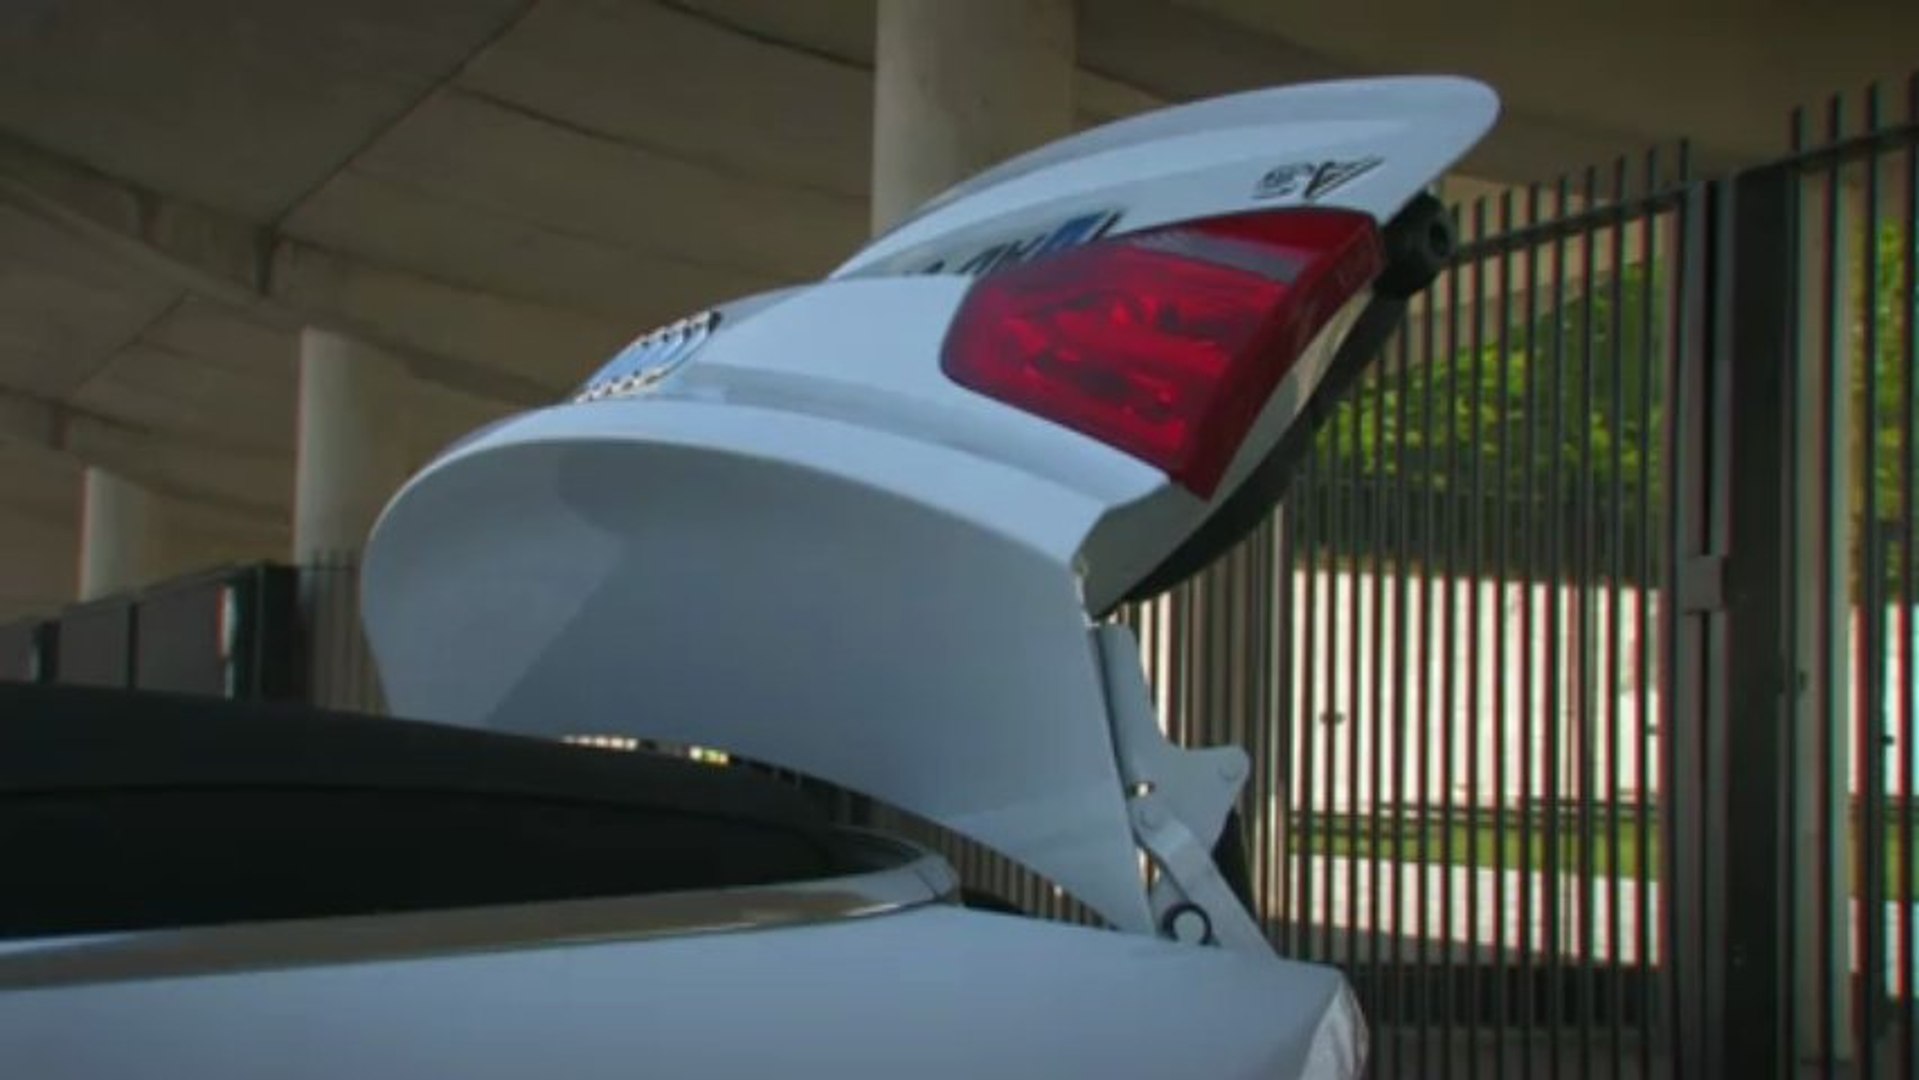 Audi A3 (2012) : une vidéo du modèle bâché